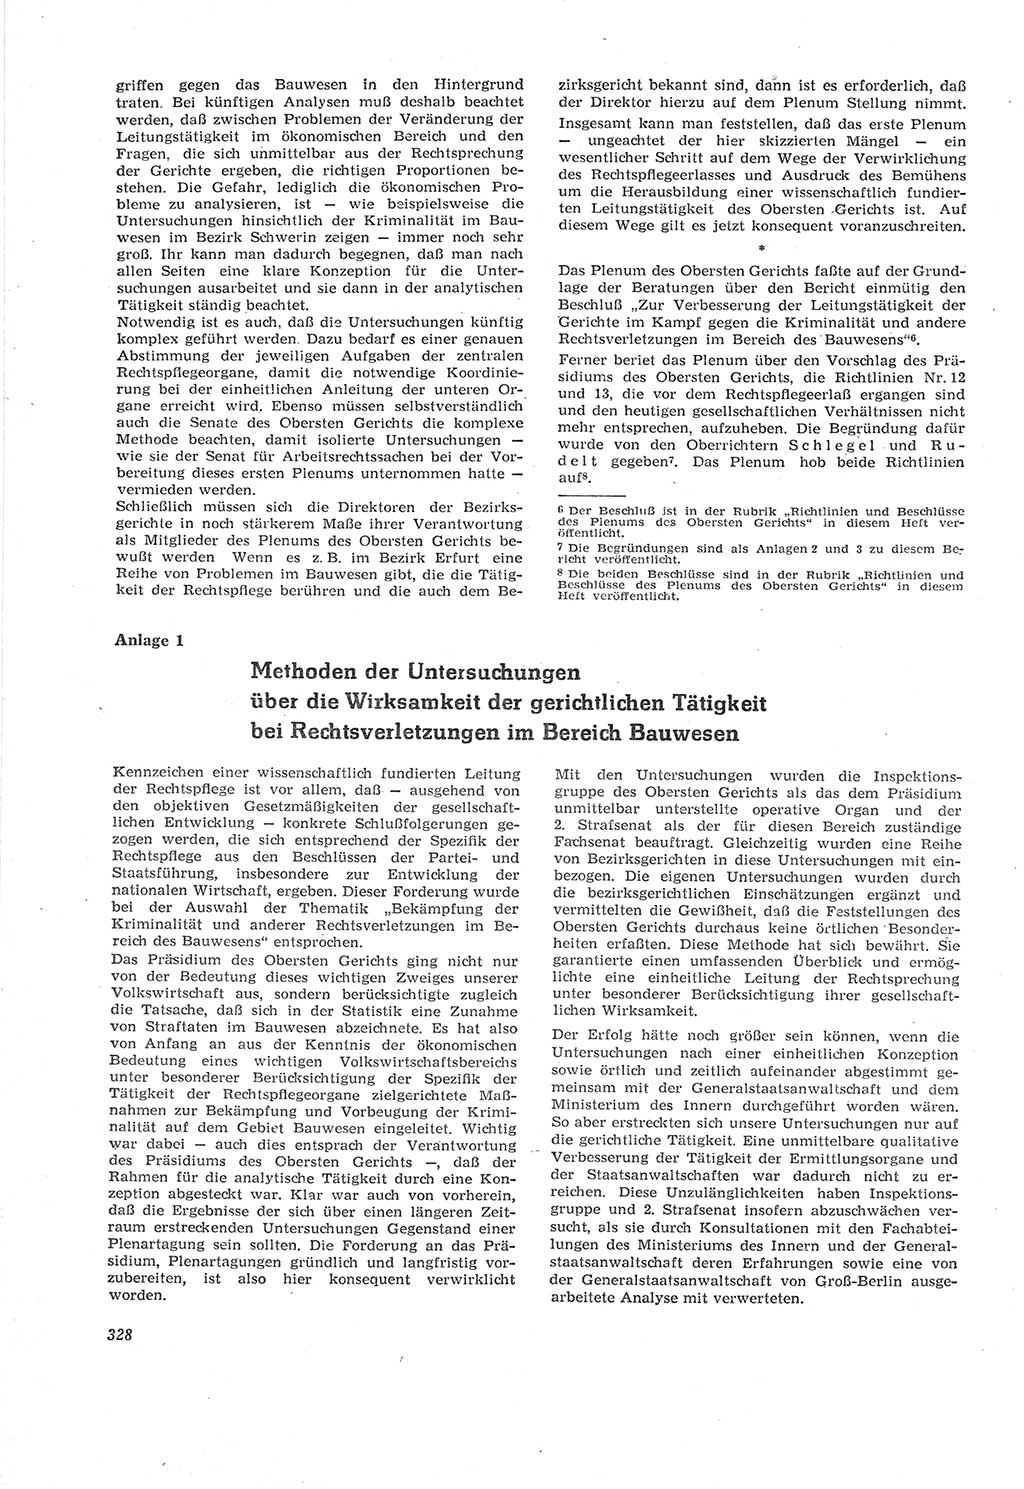 Neue Justiz (NJ), Zeitschrift für Recht und Rechtswissenschaft [Deutsche Demokratische Republik (DDR)], 18. Jahrgang 1964, Seite 328 (NJ DDR 1964, S. 328)